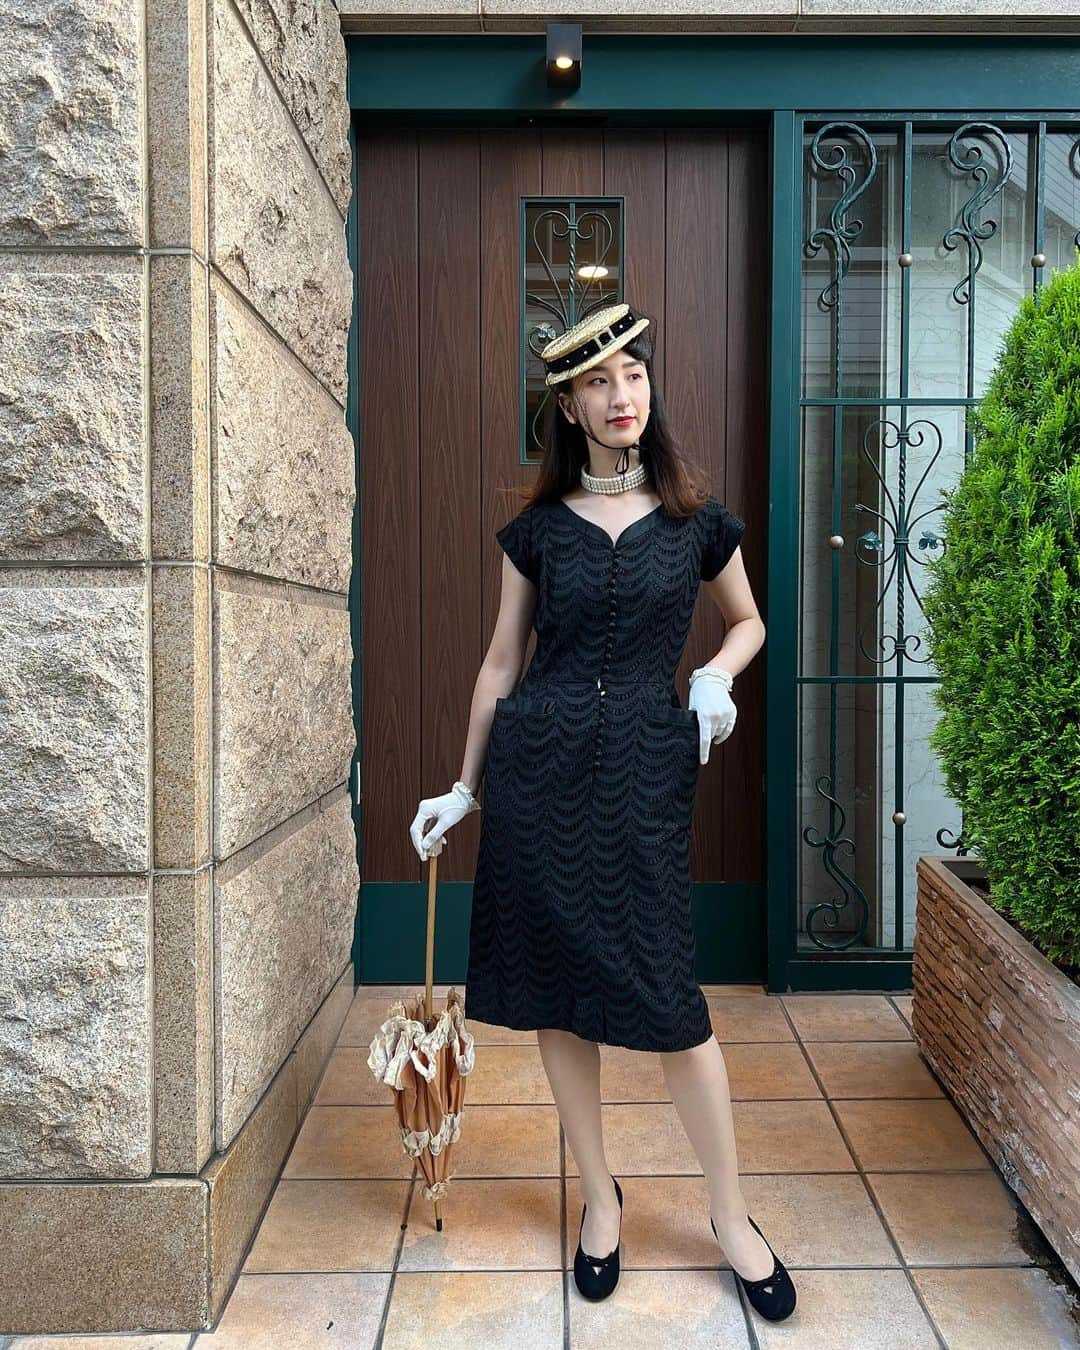 NUTTY Vintage&Collectibleのインスタグラム：「👒NEW ARRIVAL👒  ▫︎50s straw hat：new! ▫︎50s little black dress：new!  ▫︎50s nylon gloves：new! ▫︎80s Pearl choker:new! ▫︎parasol (参考商品)   本日入荷の小振りなつばにヴェルヴェットとチュールがクラシカルな vintage hatをメインに小粋なリトルブラックドレスとパール、グローブを合わせたシックなスタイル。  シンプルながらディテールとシルエットが美しいvintage little black dressと出会えたら、フォーマルから日常まで合わせる小物で変化をつけつつ様々なシーンを楽しむ事が出来ます。  NUTTYでは自分にピッタリのスペシャルドレスを自分流に着こなすvintage小物も沢山ご用意しております✨  ┈┈┈┈┈┈┈┈┈┈┈┈┈┈┈┈┈ 【NUTTY通販について】 ⚫︎SNS掲載商品は通販可能です。お気軽にDMにてお問い合わせ下さい。 ⚫︎＜ONLINE STORE＞http://nutty.theshop.jp/ （プロフィールページURLよりアクセス出来ます） ┈┈┈┈┈┈┈┈┈┈┈┈┈┈┈┈┈  #nuttyvintage#vintage #vintagefashion#南堀江#1930s#1940s#1950s#1960s#1970s #1980s #80s #ヴィンテージ#Vintageblouse#1950sfashion#1960sshorts#lucite#lucitejewelry#Hawaiian#vintageHawaiian#whitestag#collectivejewelry #ootd #vintageootd #MaryPoppins #breakfastattiffanys #lbd」